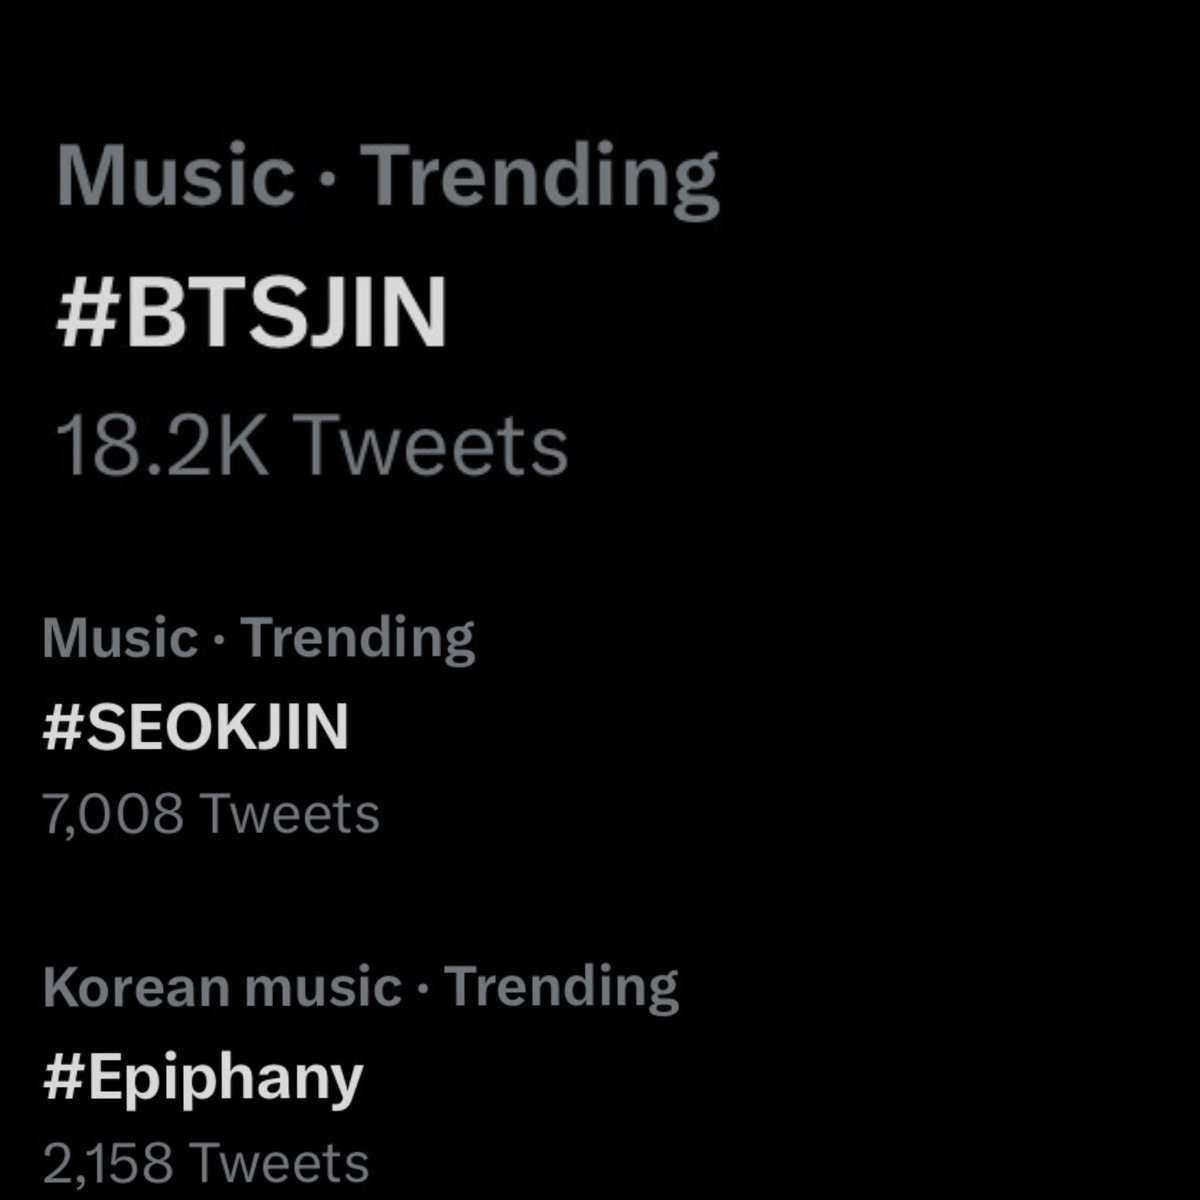 TRENDING CURRENTLY IN THE US 🇺🇸
- #BTSJIN 
- #SEOKJIN 
- #Epiphany